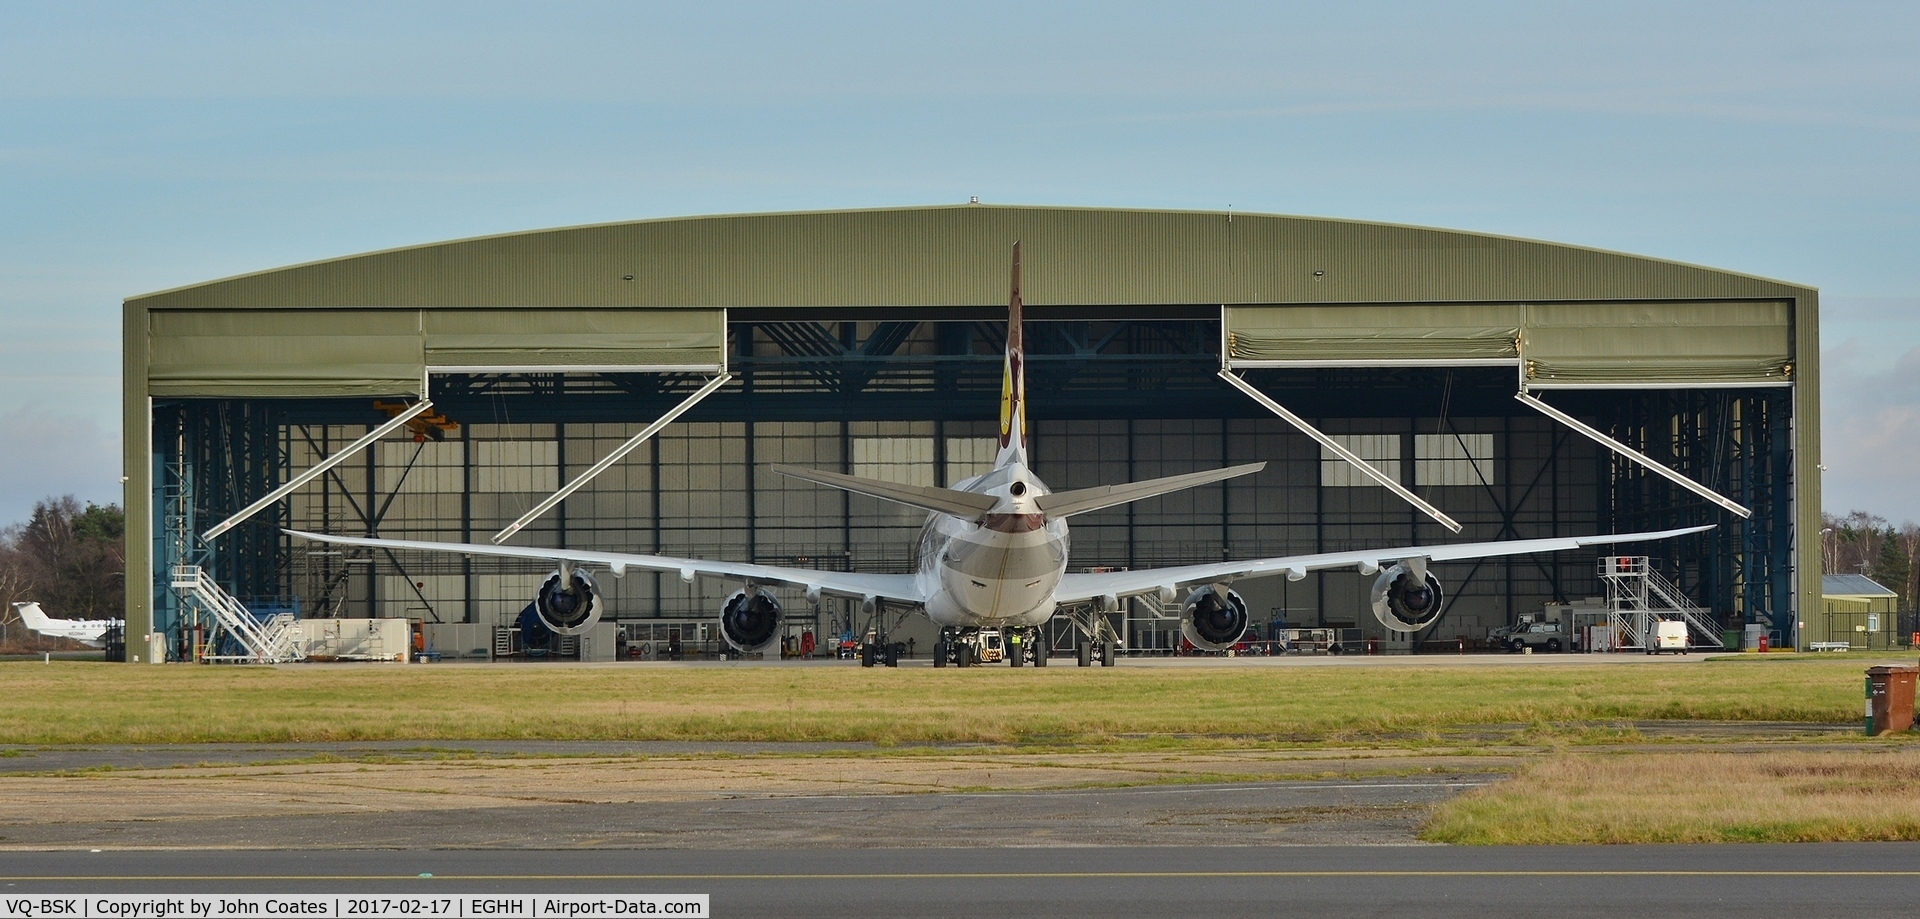 VQ-BSK, 2015 Boeing 747-8ZV BBJ C/N 42096, Hangar doors opening for this resident's return